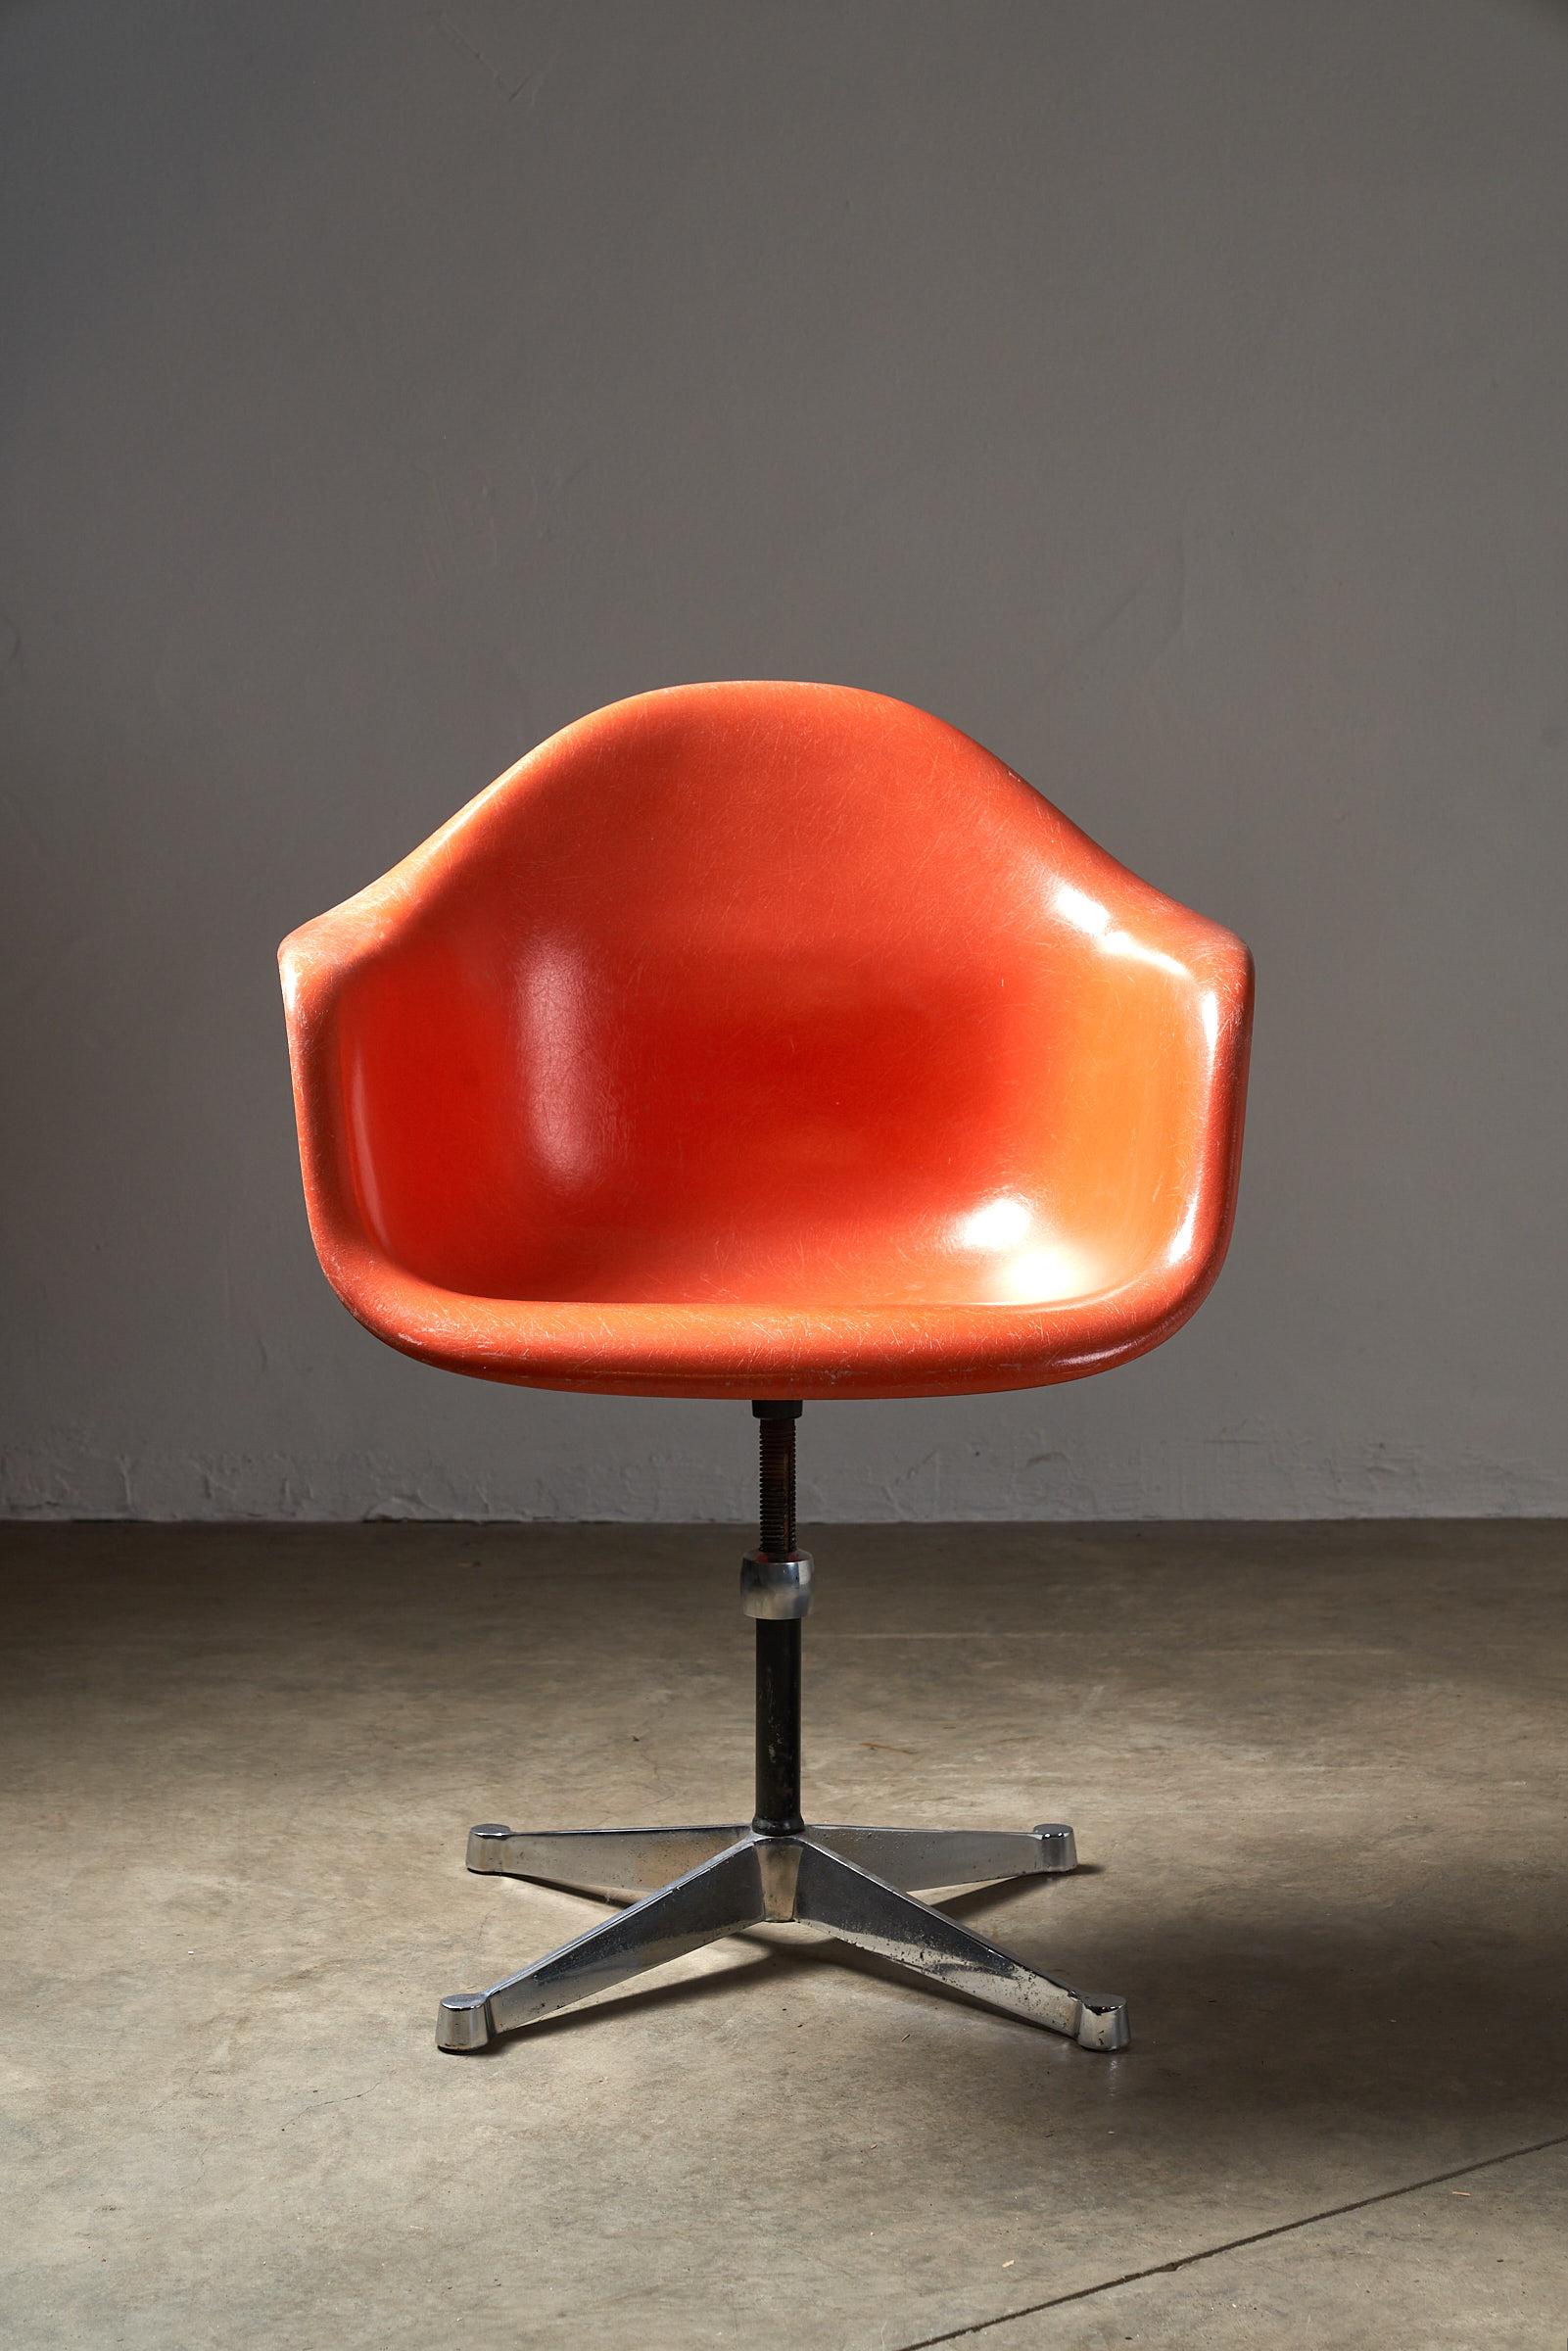 Wir stellen den Mid-Century Charles Eames by Herman Miller Orange Fibreglass Shell Chair vor, ein zeitloses Stück Designgeschichte. Jeder Stuhl hat seinen eigenen, einzigartigen Charakter, der sein Alter und sein Erbe zur Geltung bringt und